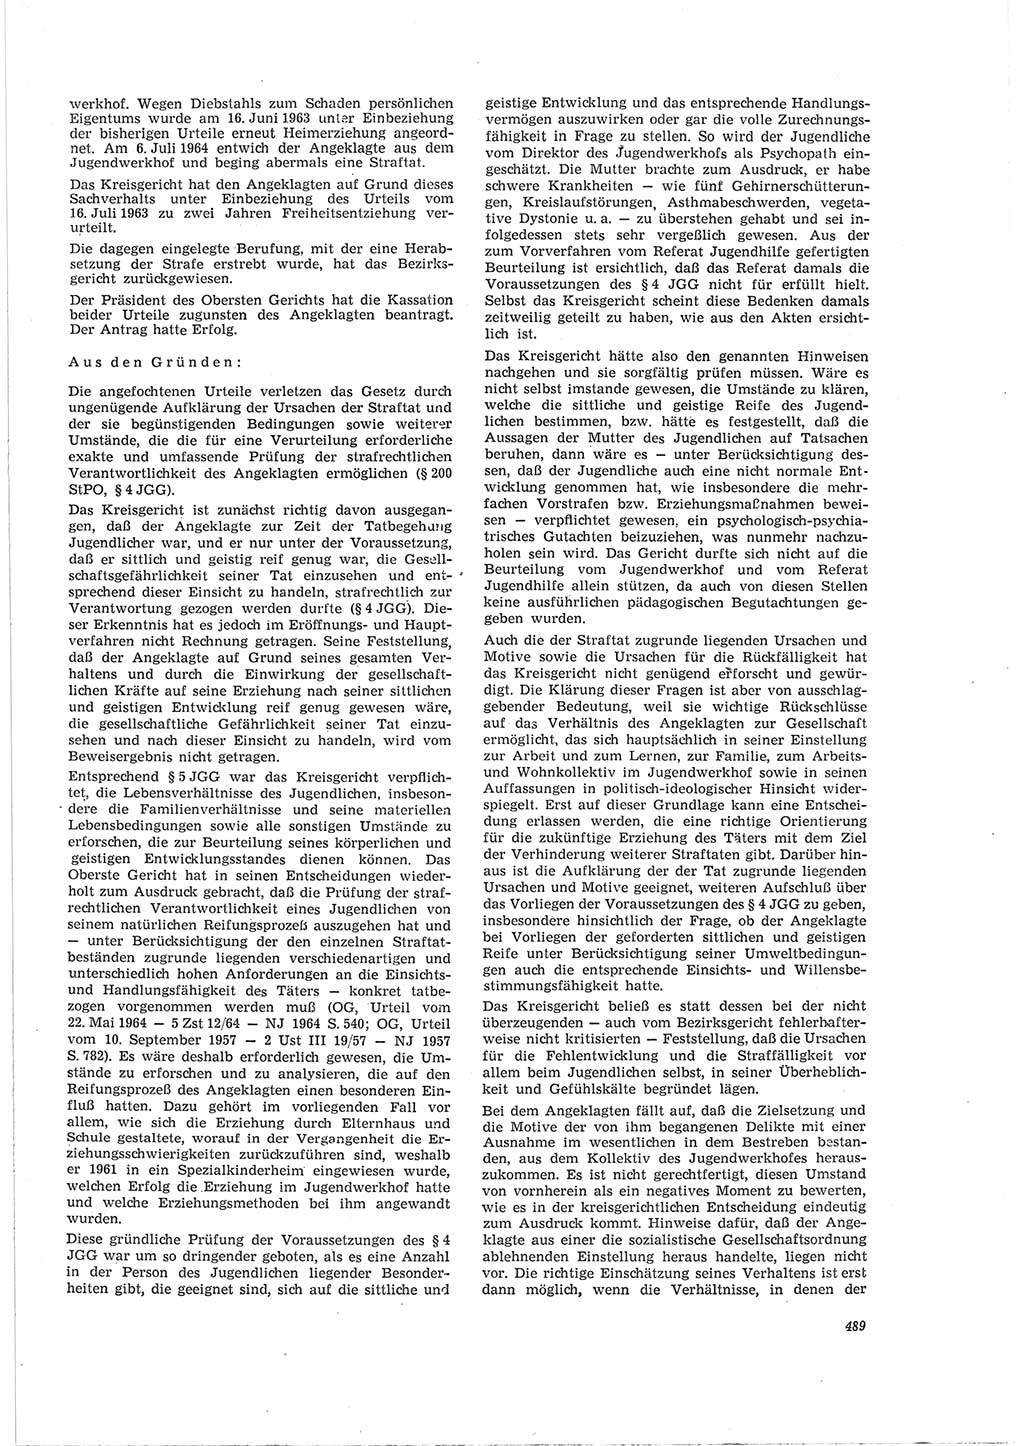 Neue Justiz (NJ), Zeitschrift für Recht und Rechtswissenschaft [Deutsche Demokratische Republik (DDR)], 19. Jahrgang 1965, Seite 489 (NJ DDR 1965, S. 489)